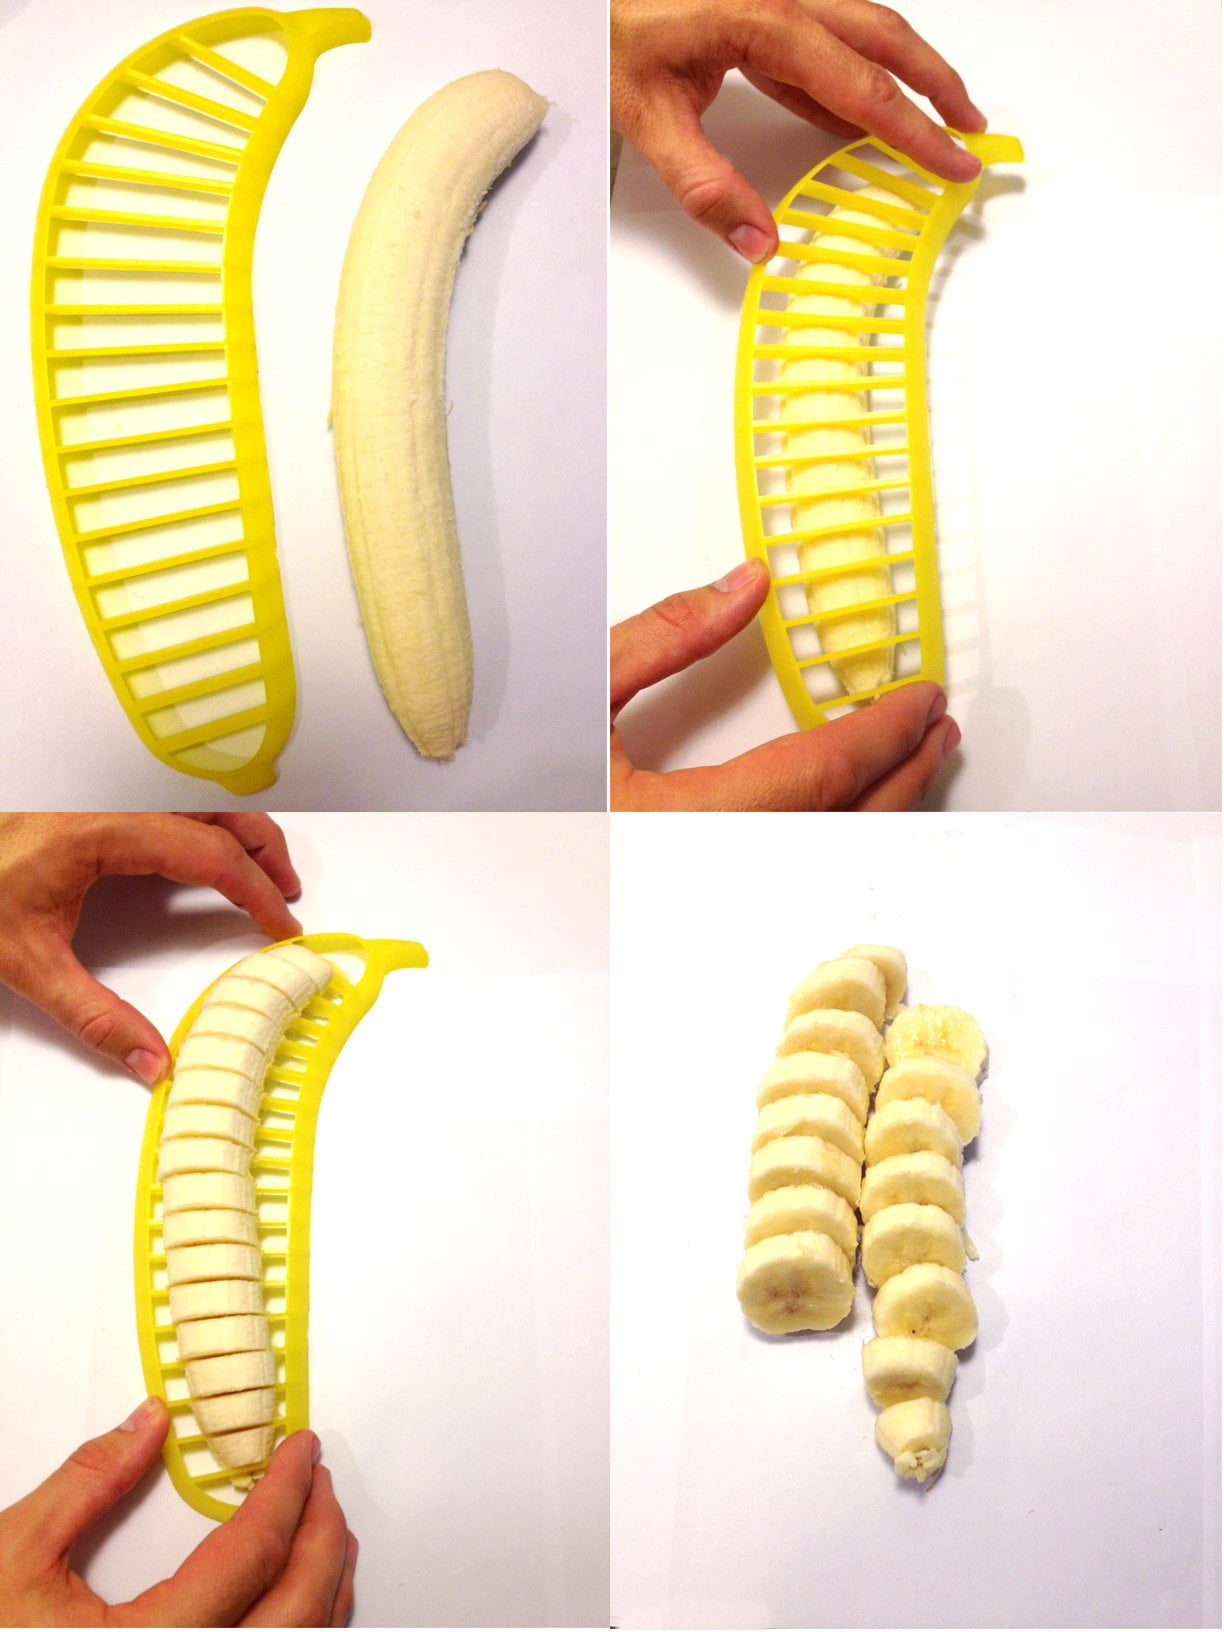 Homezo™ Banana Slicer (Buy 2 Get 1 FREE)